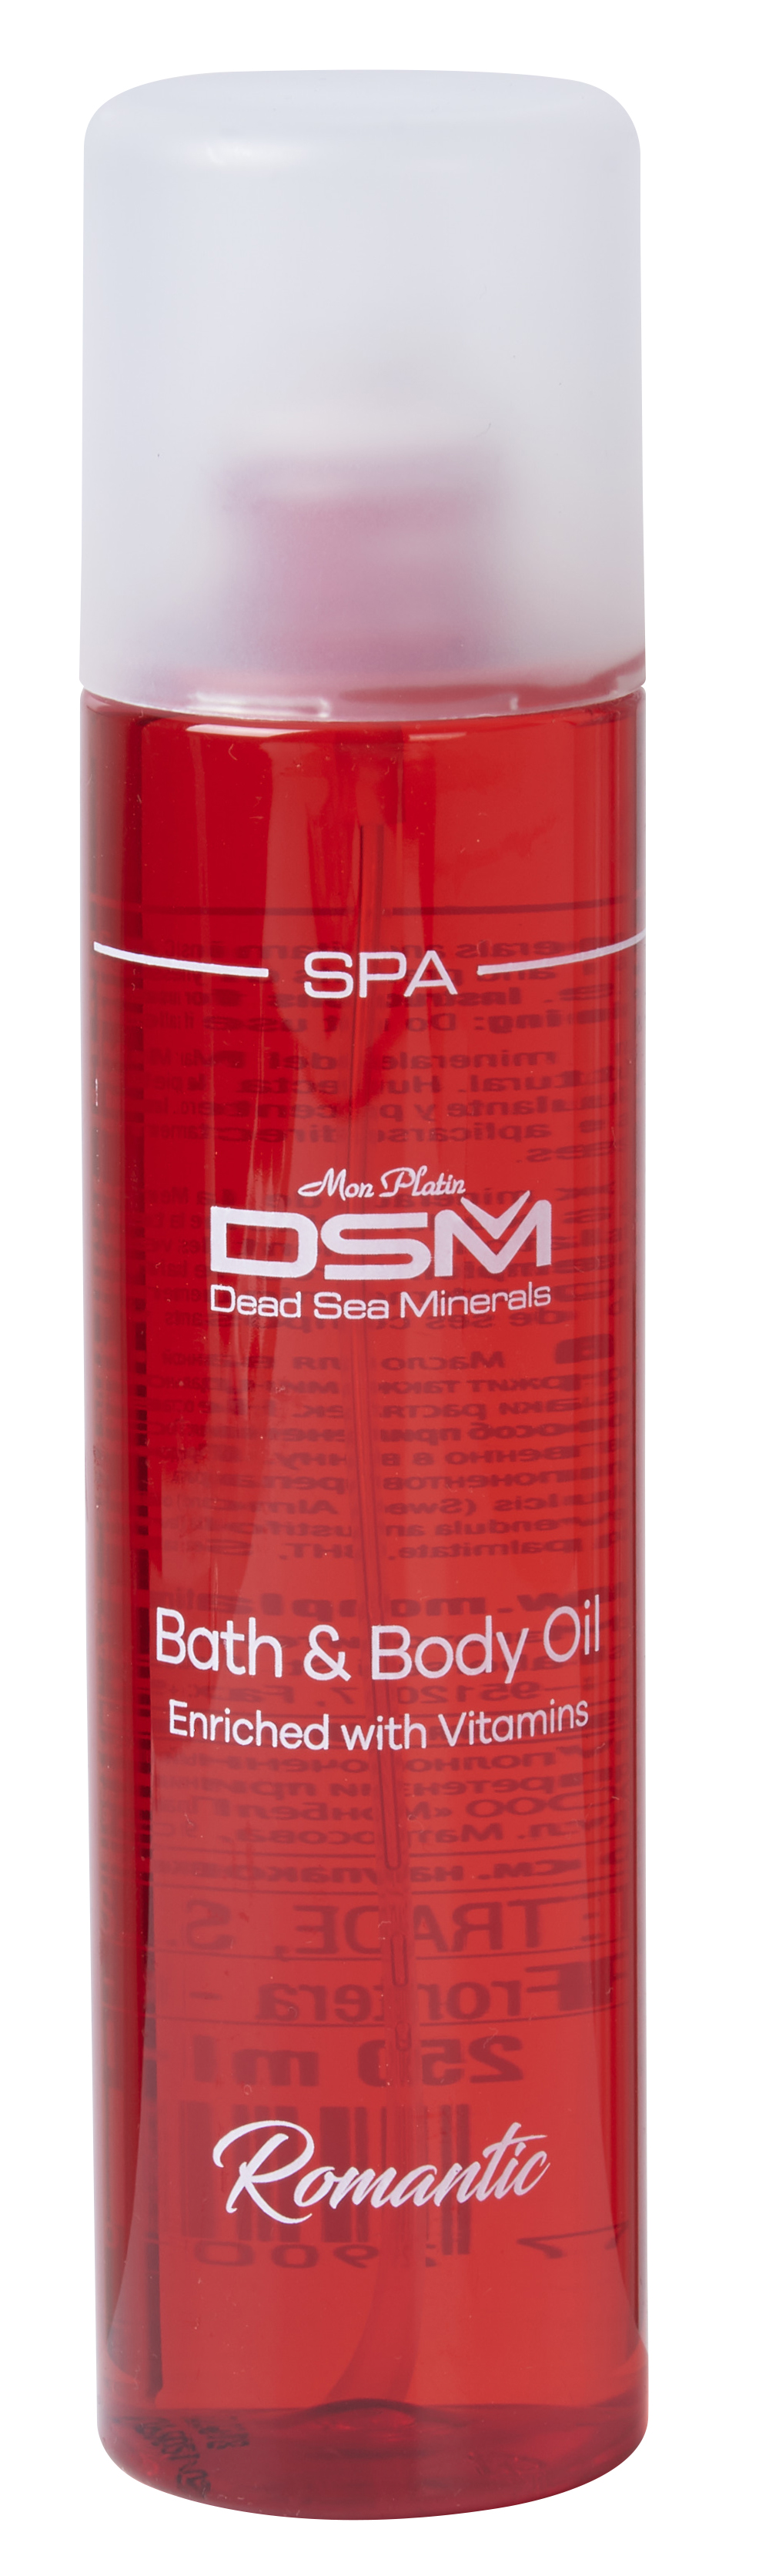 Bath&body oil